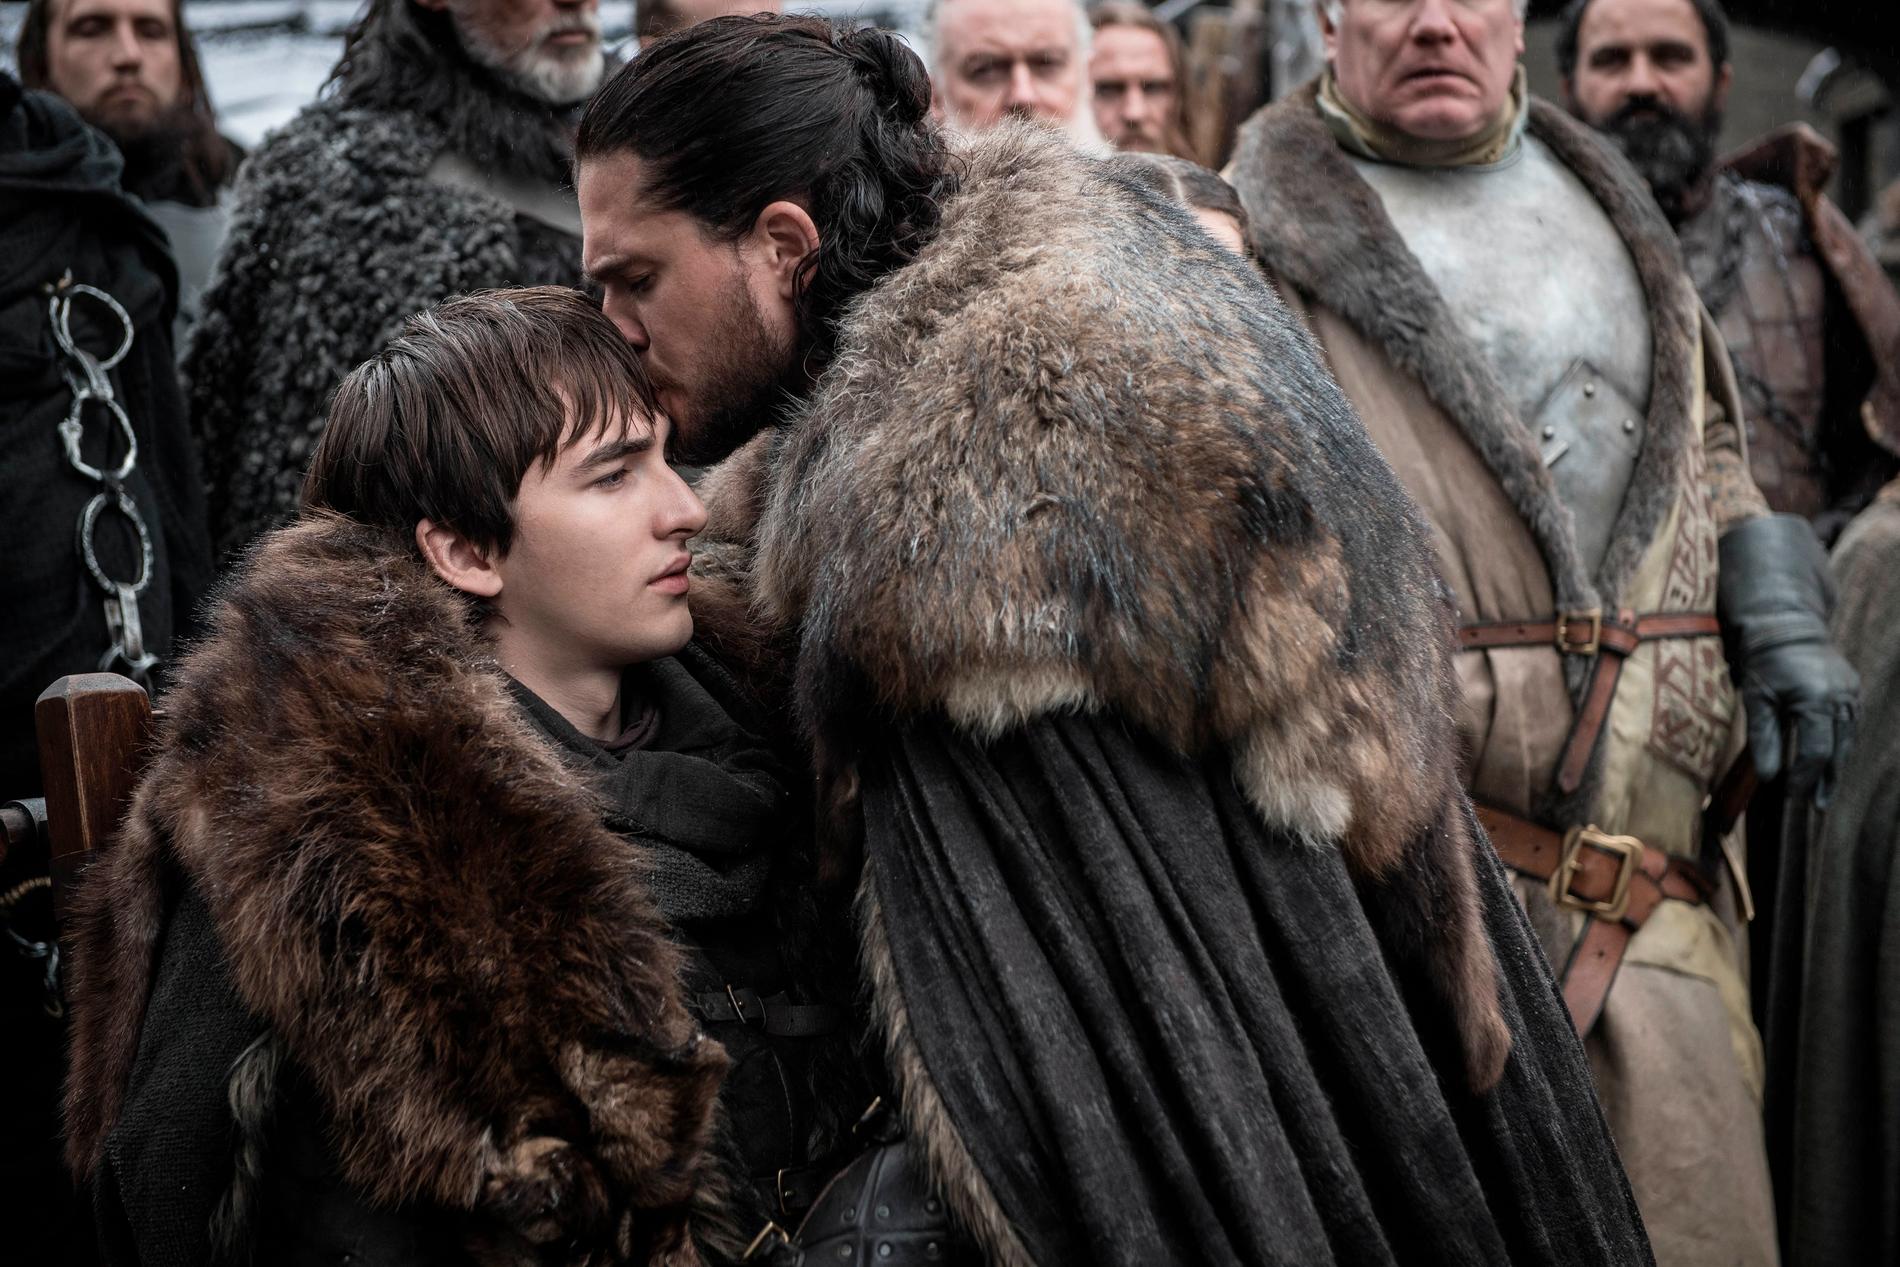 Hvem blir konge? Bran eller Jon? Eller blir det Daenerys eller Sansa?